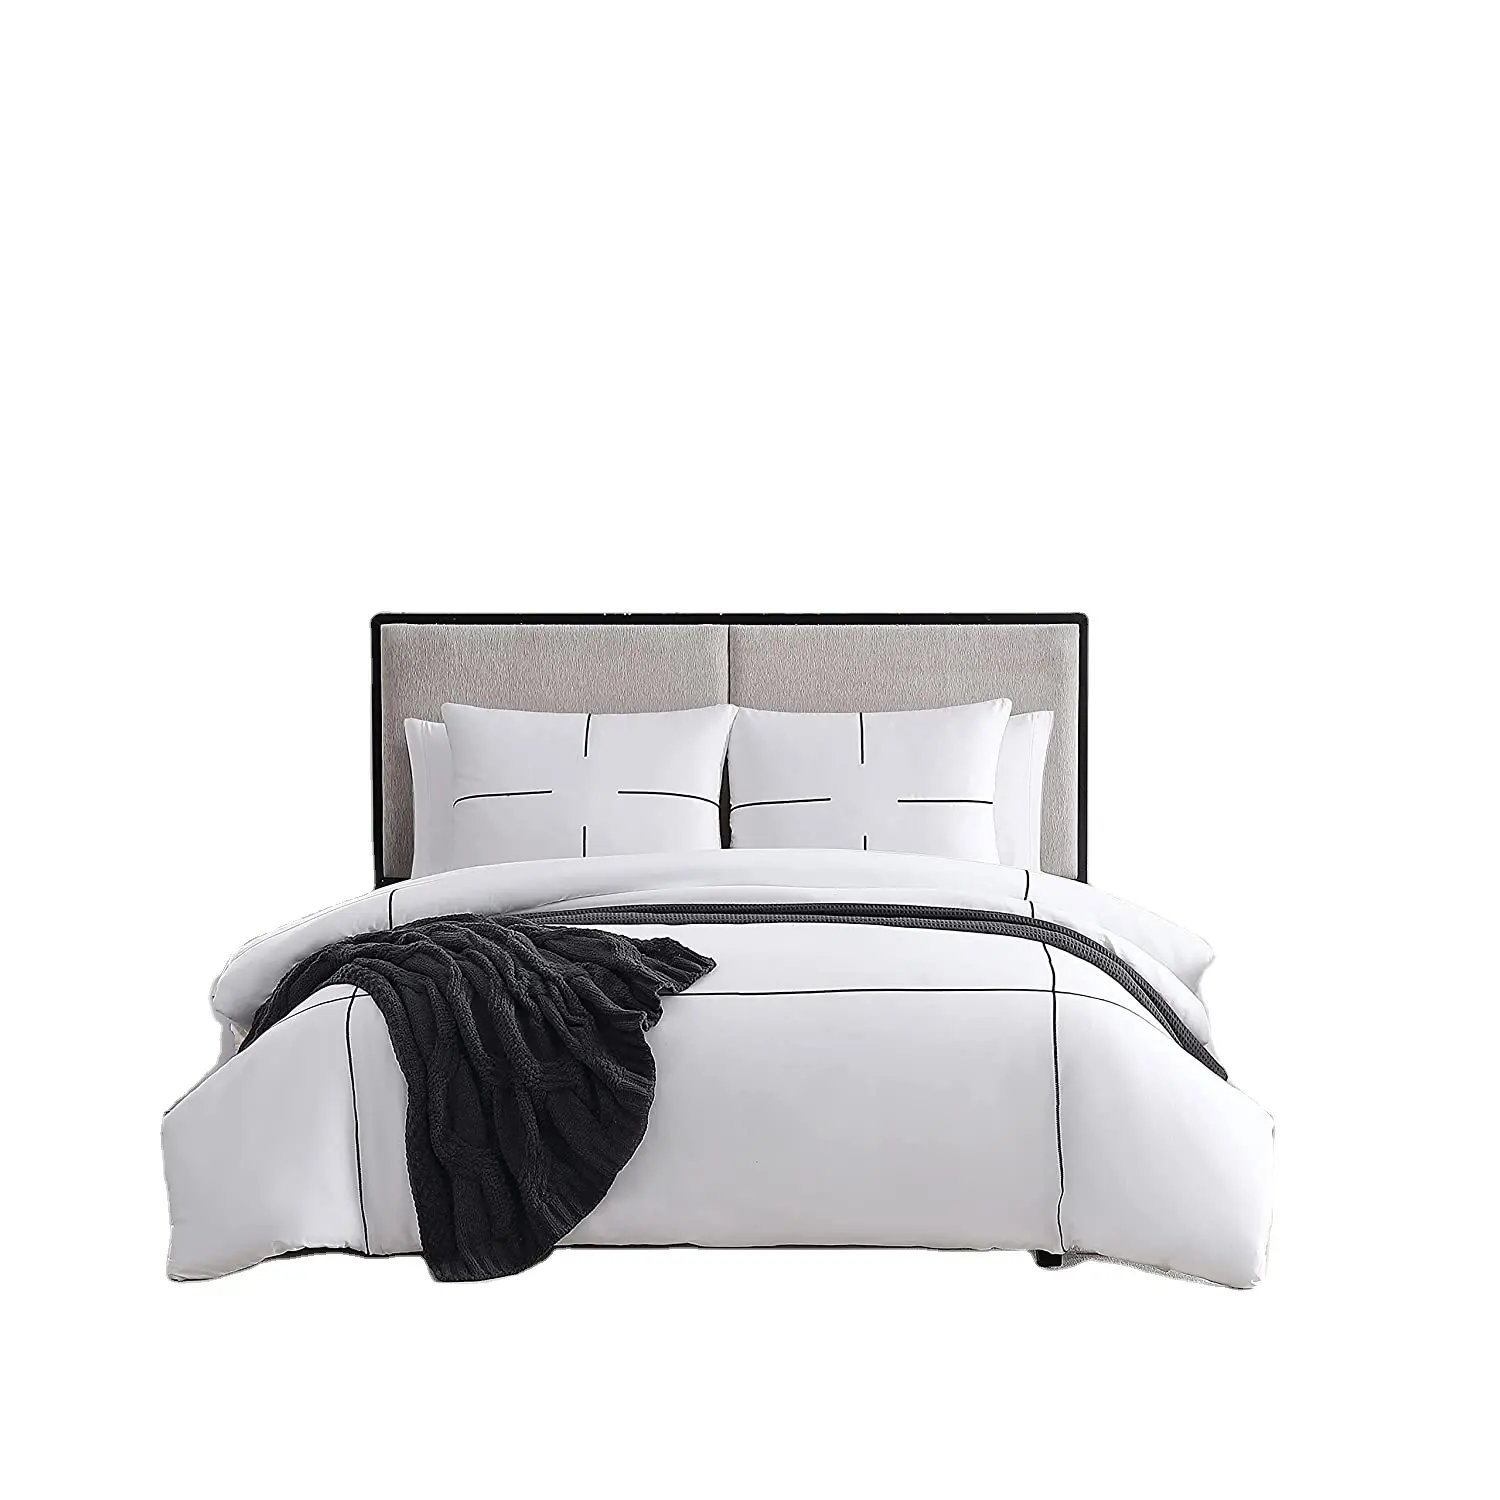 ホームホテル用のマッチングシャムキング掛け布団ベッドシーツセット付きの高級コットンサテン寝具